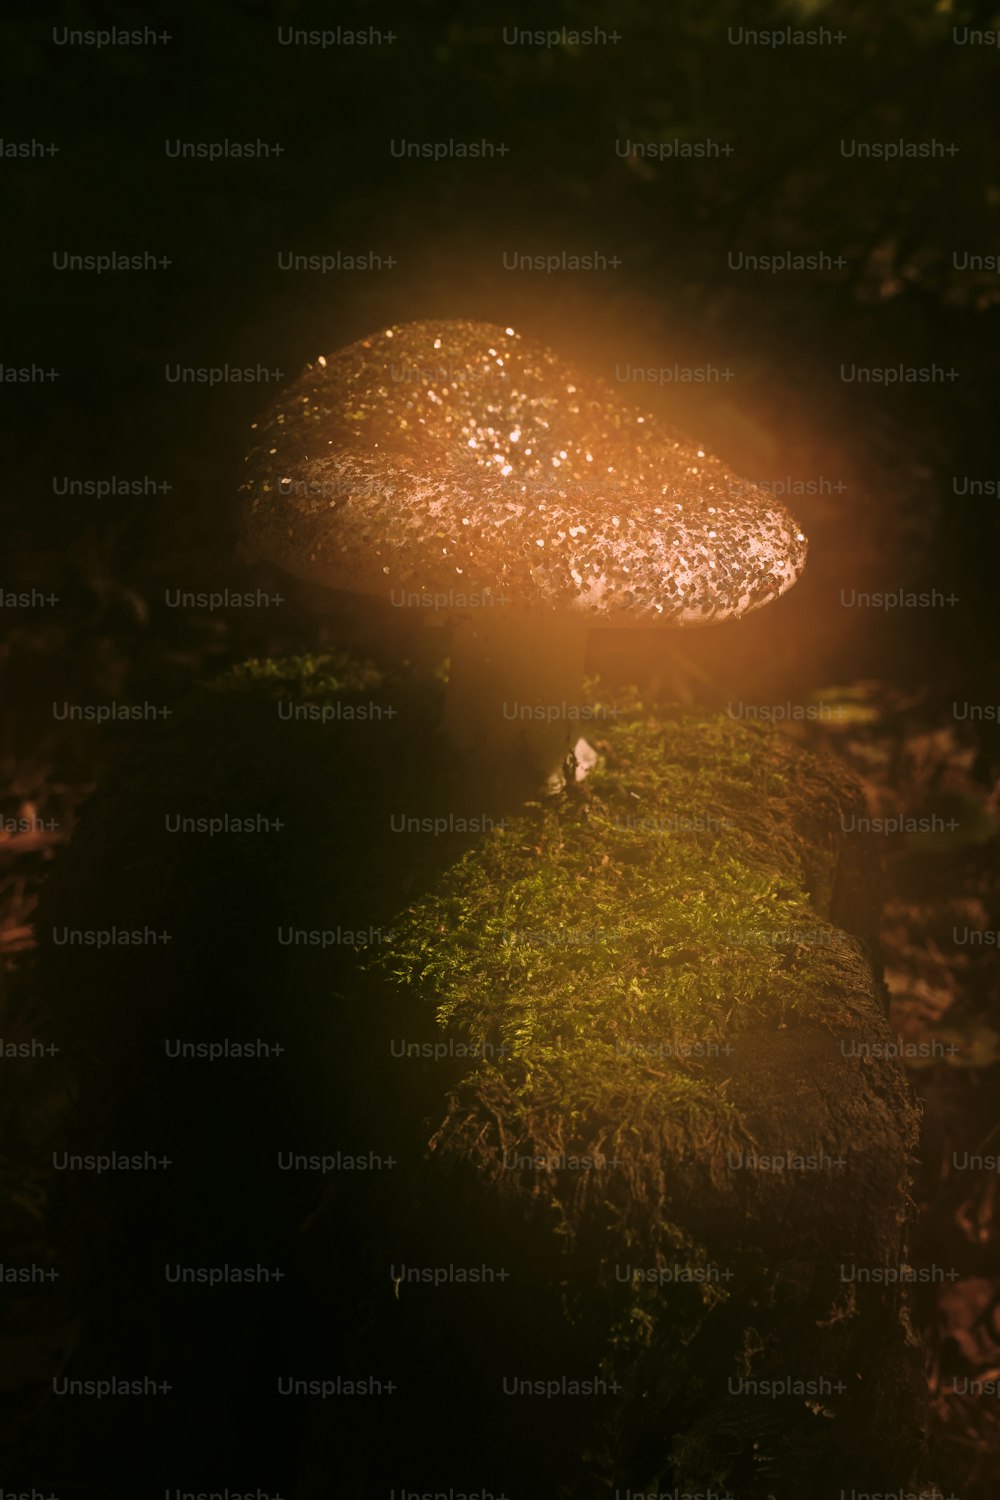 이끼로 덮인 바위 위에 앉아 있는 버섯